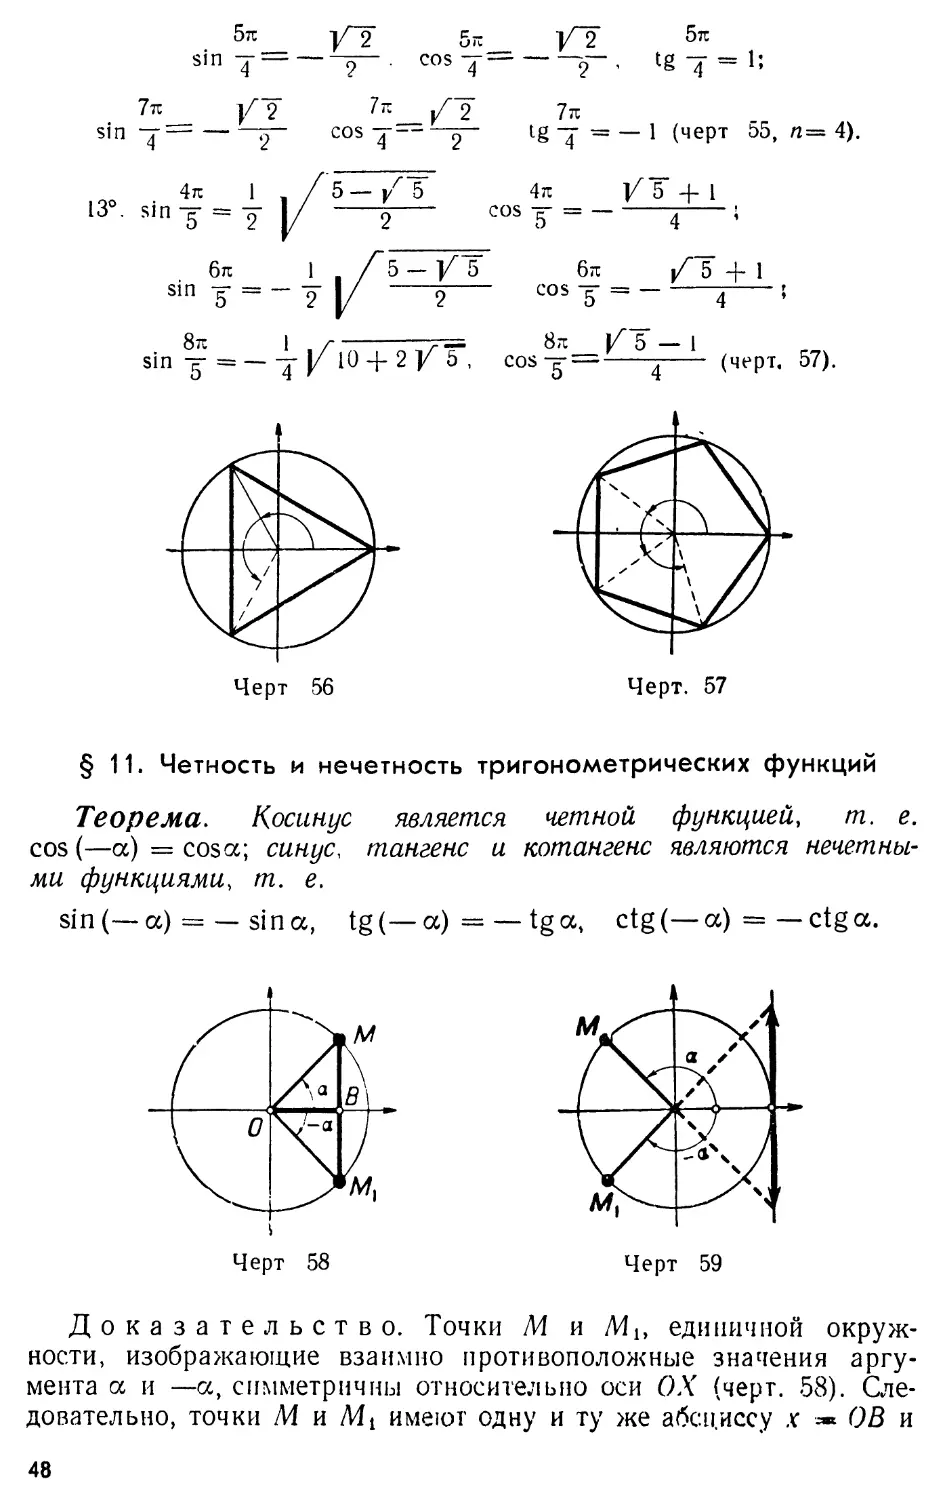 § 11. Четность и нечетность тригонометрических функций